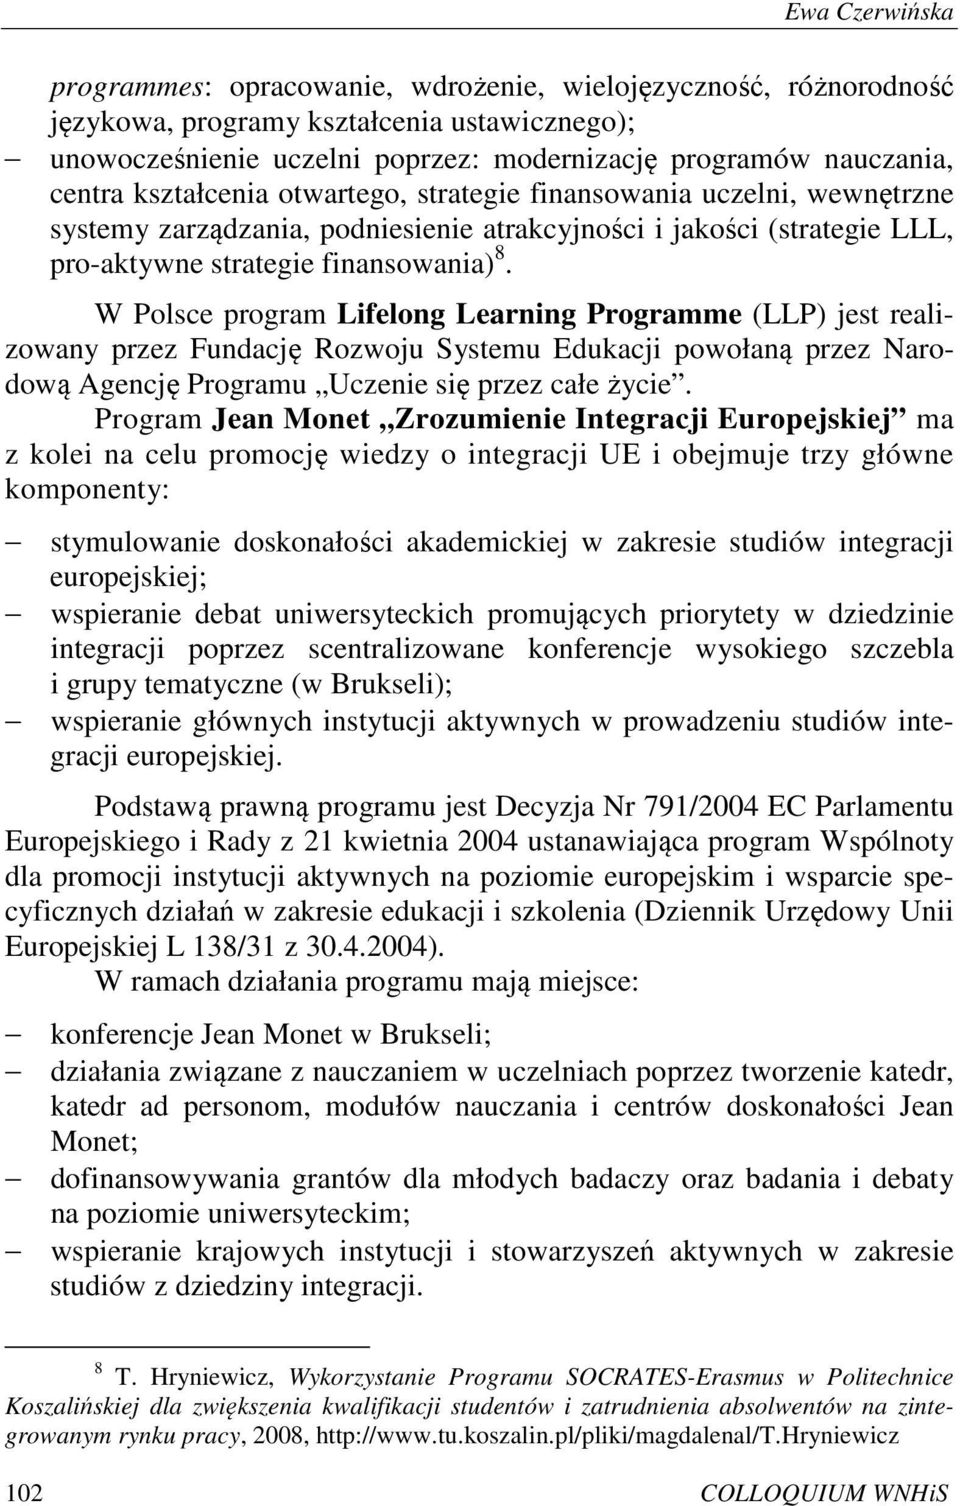 W Polsce program Lifelong Learning Programme (LLP) jest realizowany przez Fundację Rozwoju Systemu Edukacji powołaną przez Narodową Agencję Programu Uczenie się przez całe życie.